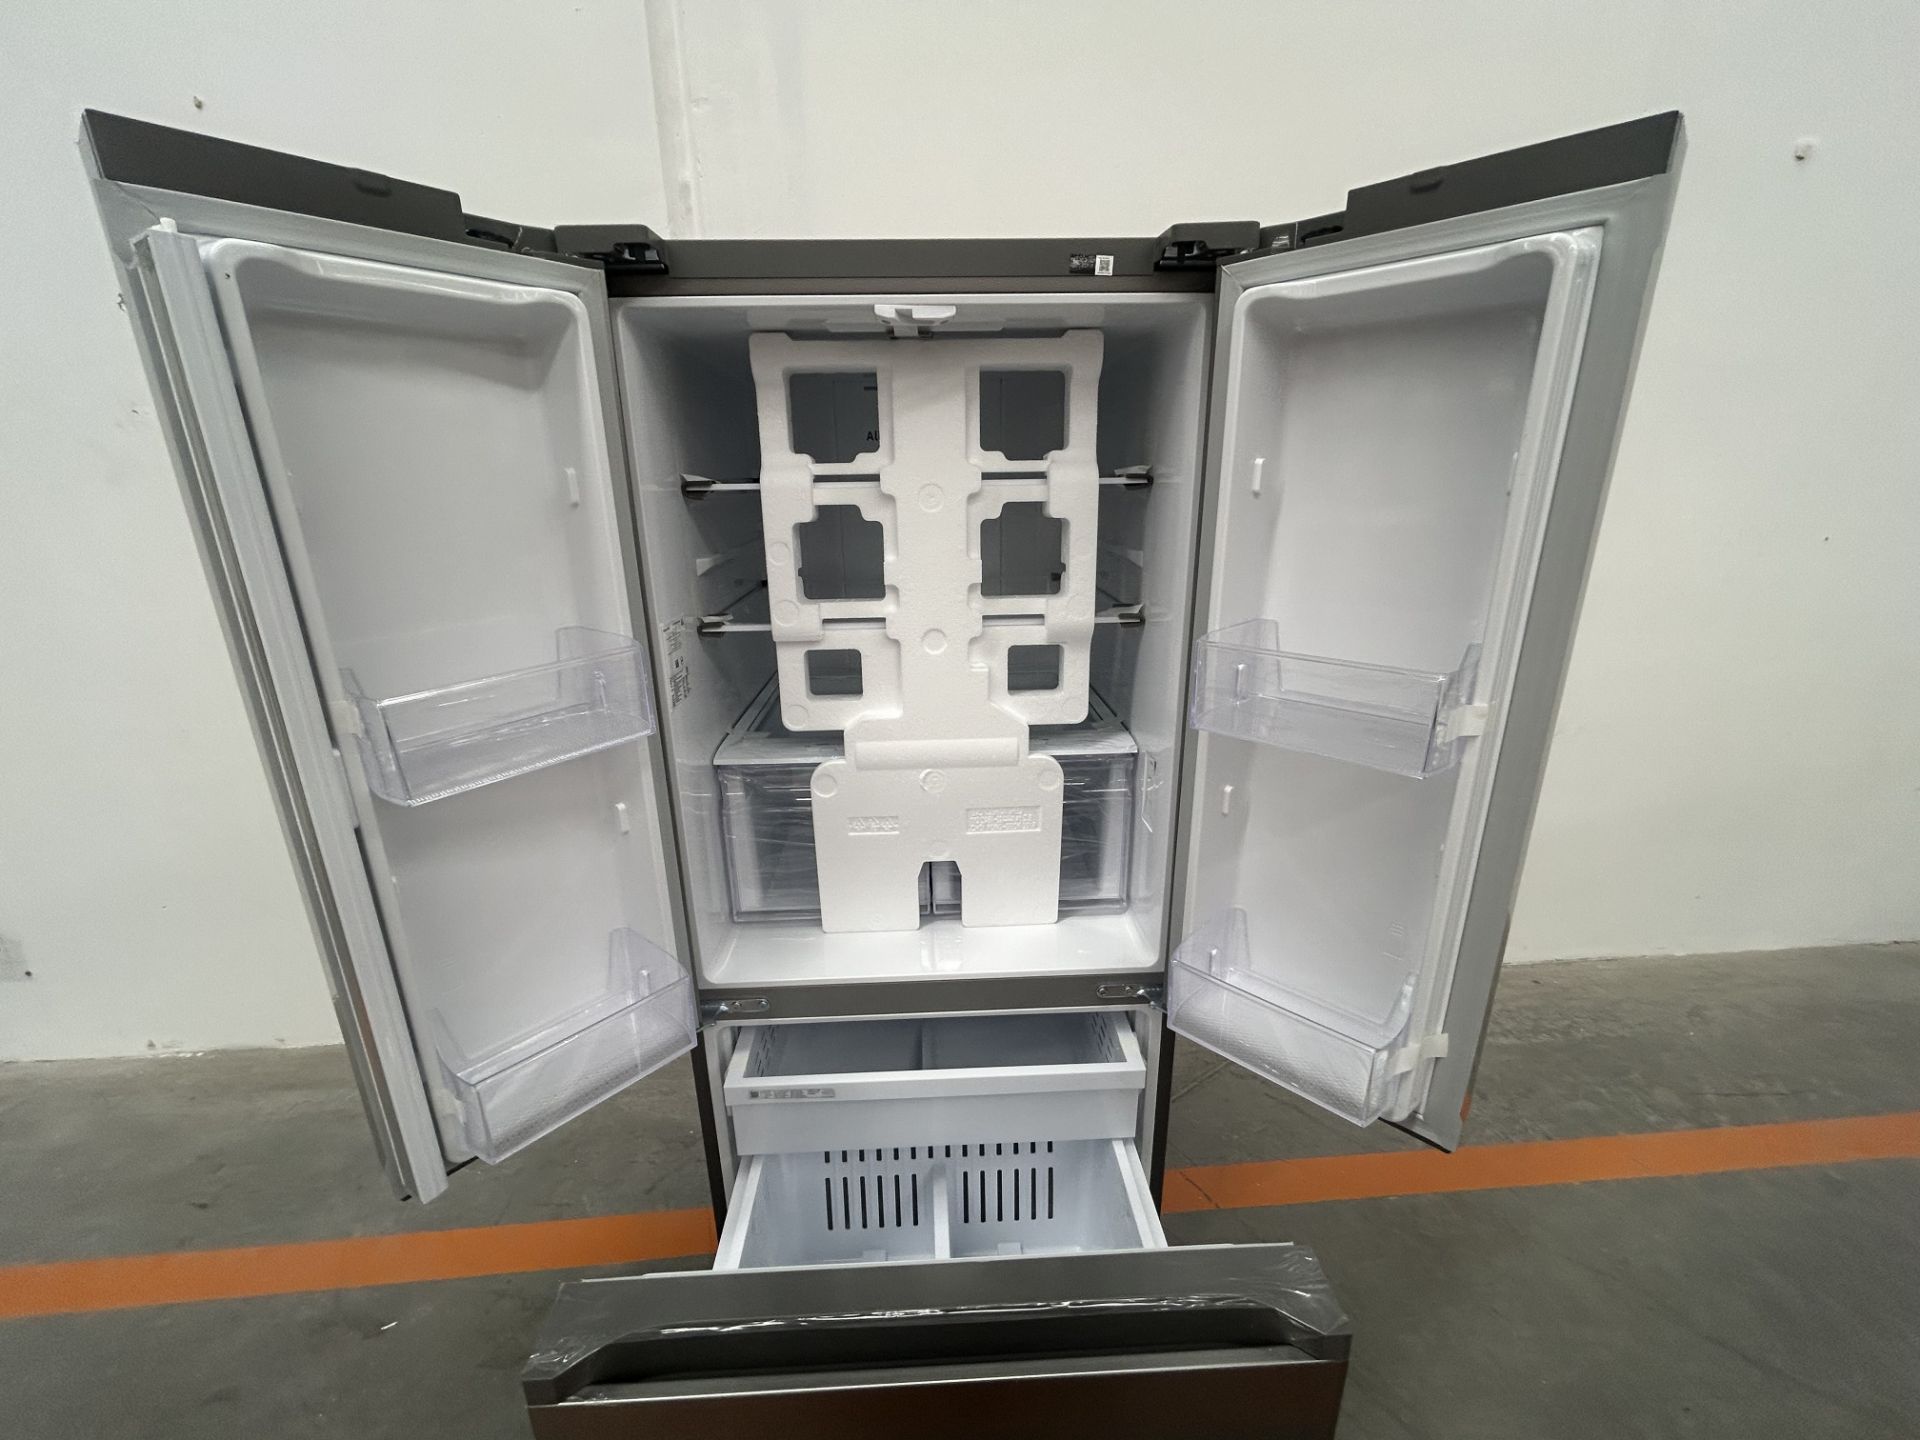 (NUEVO) Refrigerador Marca SAMSUNG, Modelo RF22A410S9, Serie 01836B, Color GRIS - Image 4 of 5